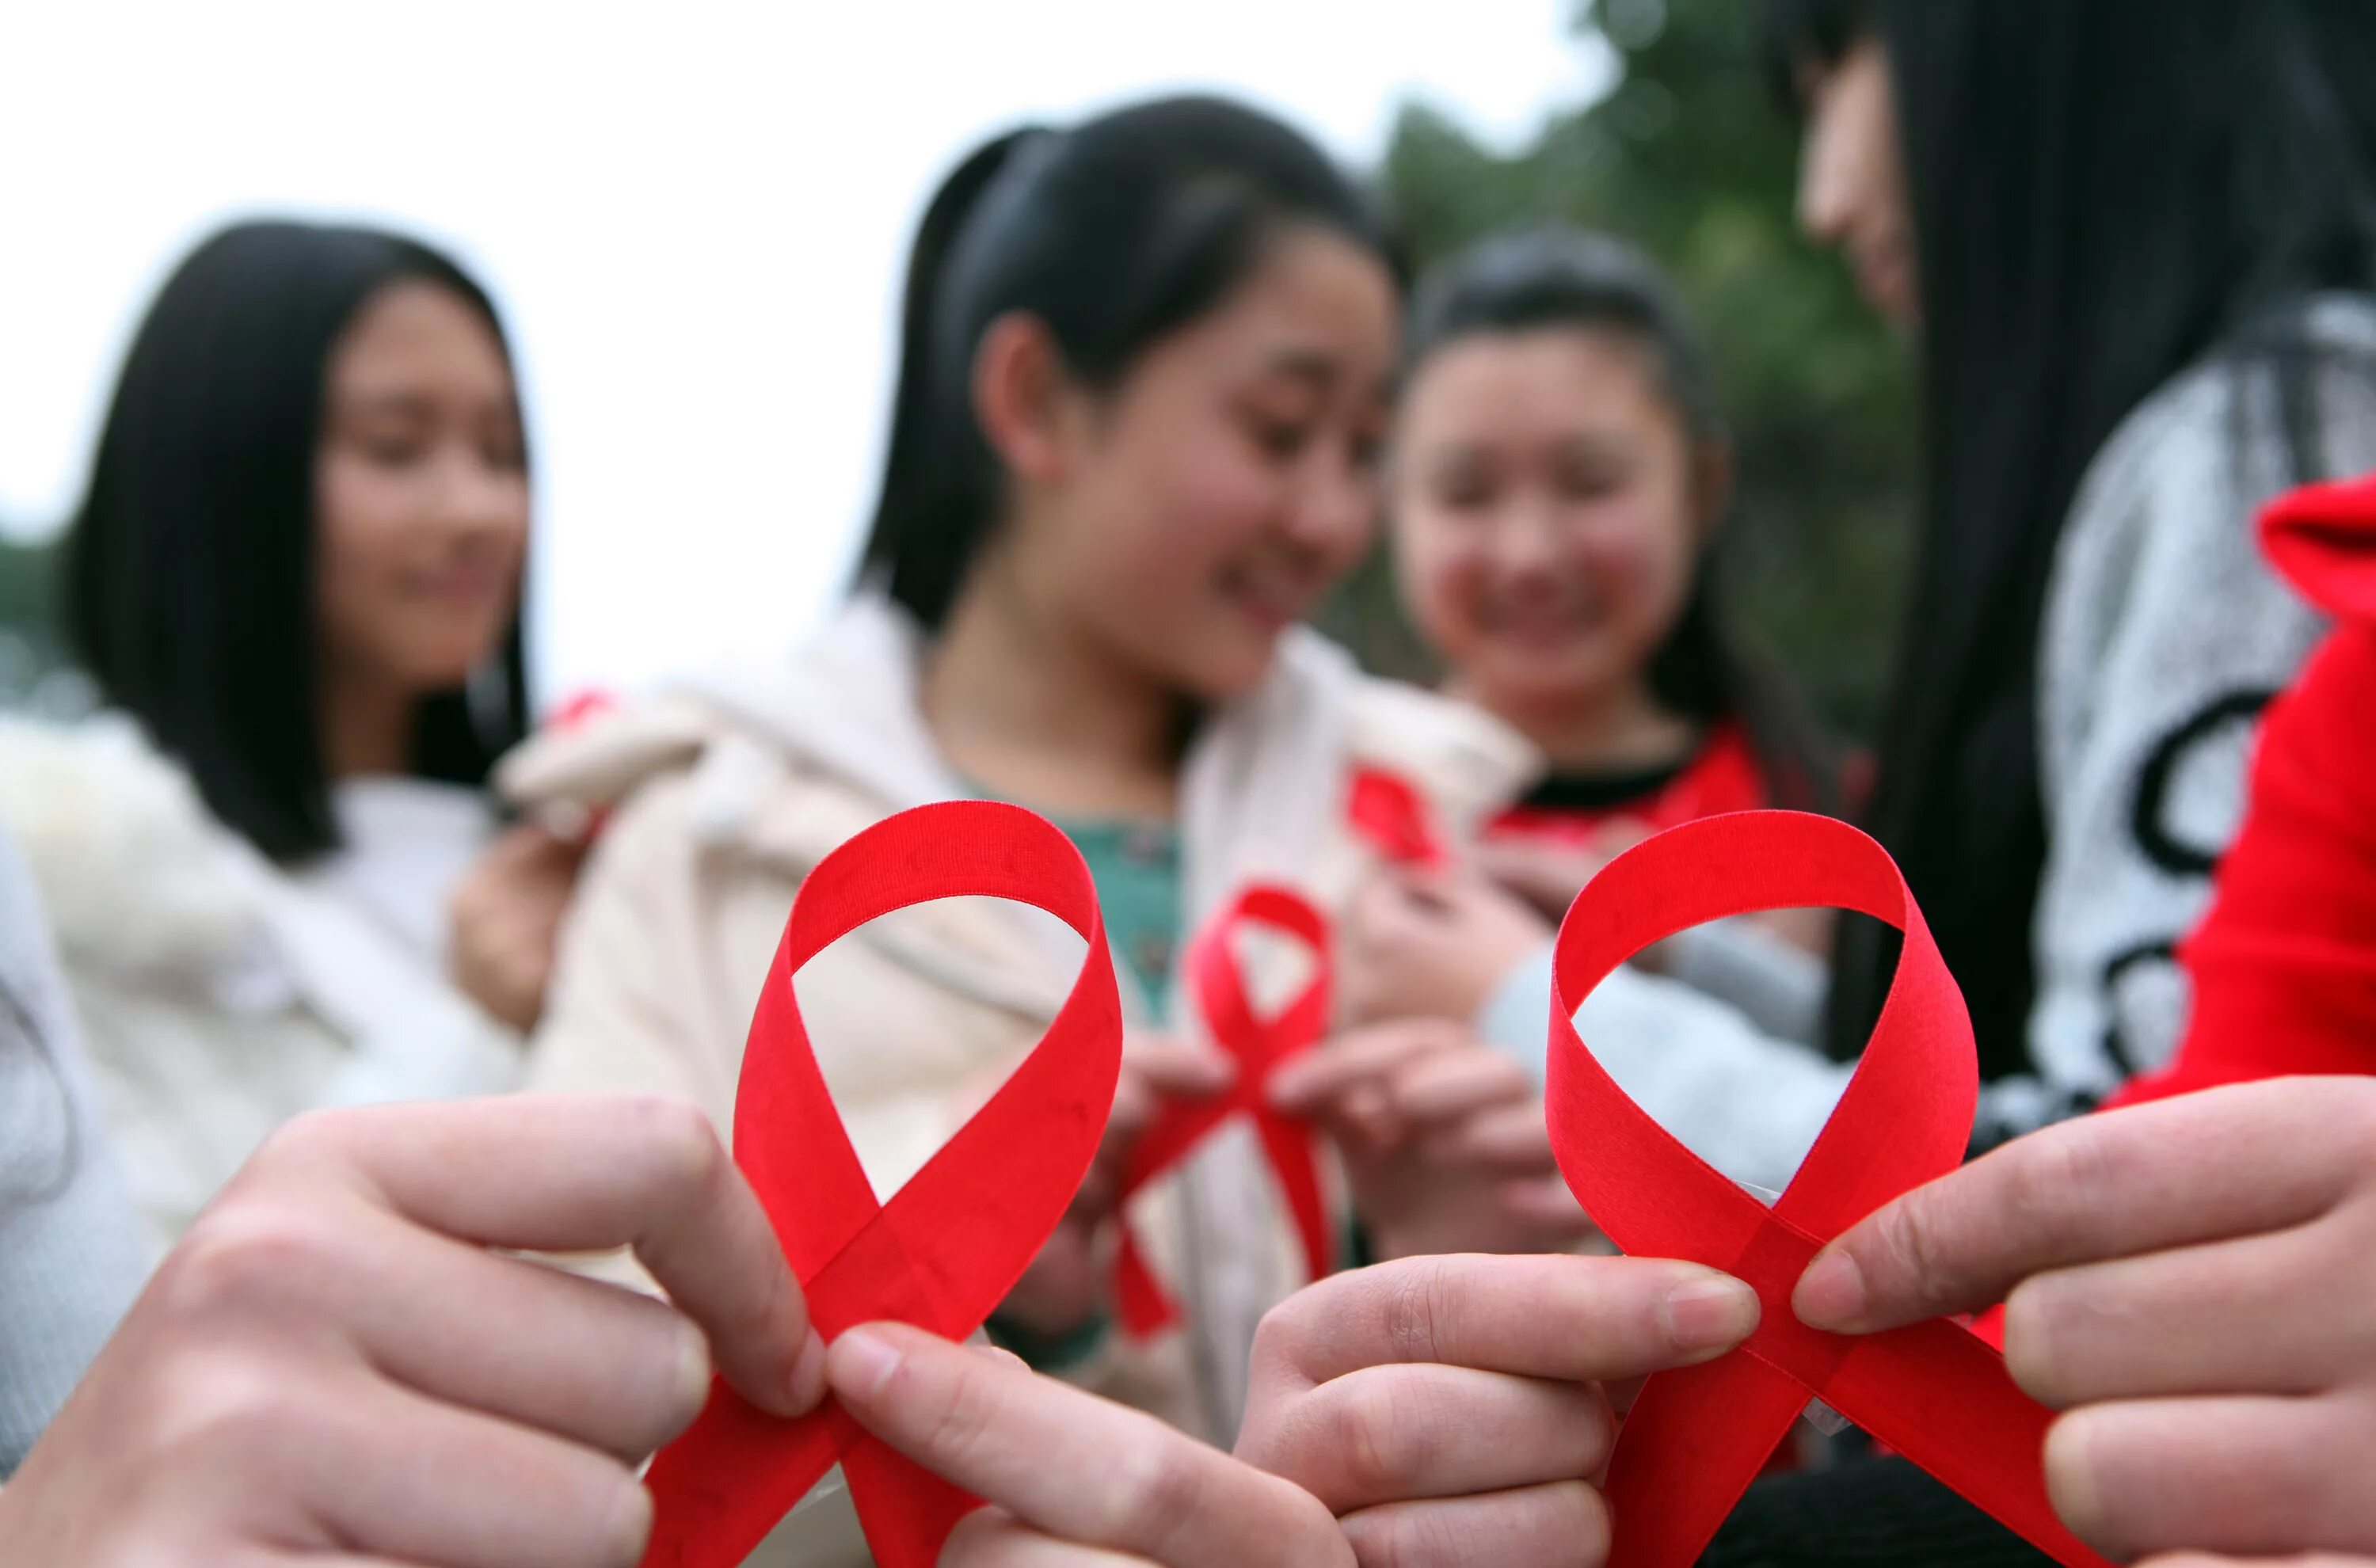 День борьбы со СПИДОМ. Красная лента на человеке. Люди против СПИДА.